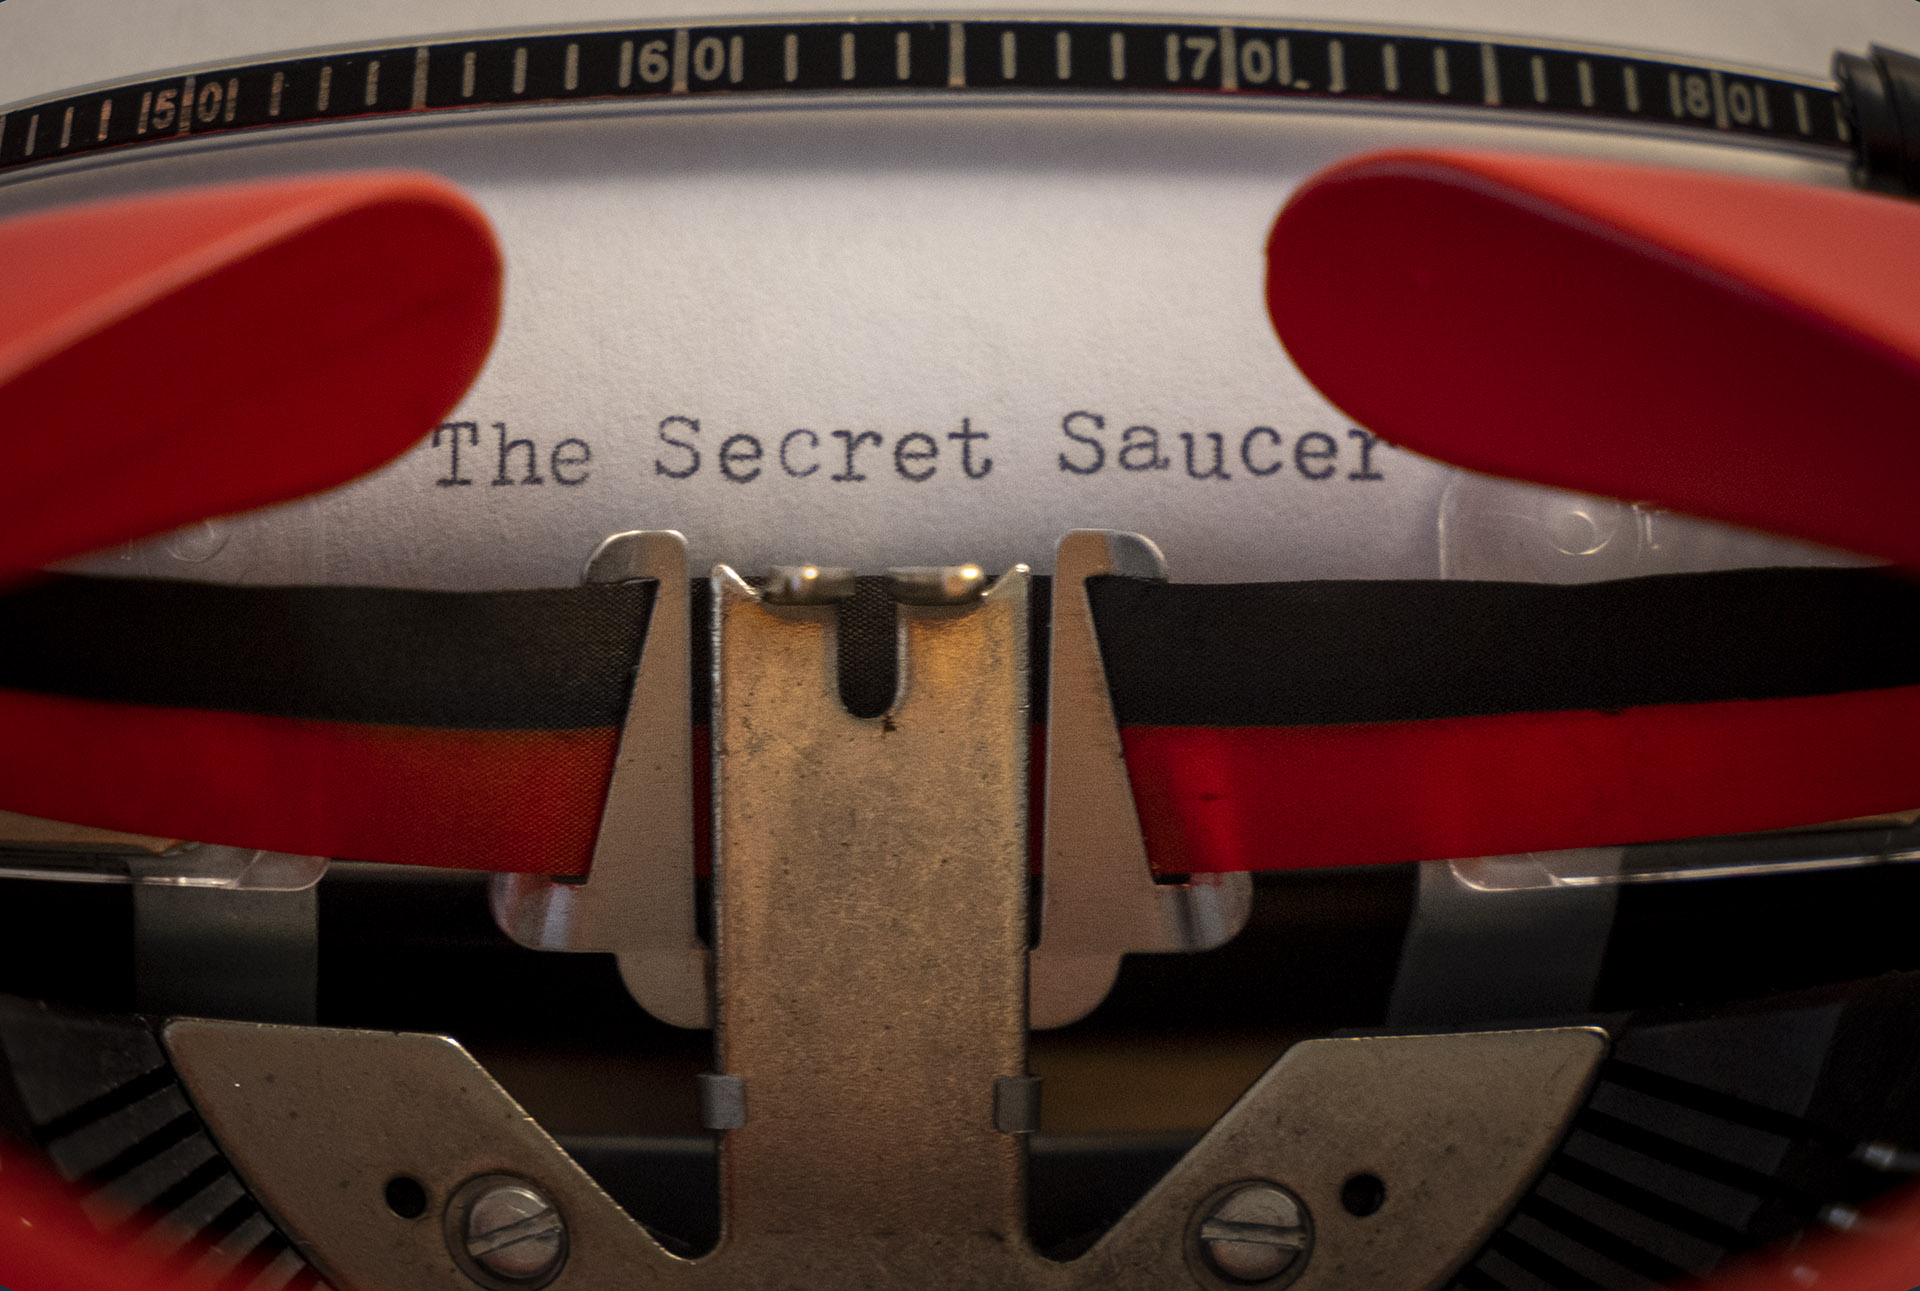 The Secret Saucer in typewriter